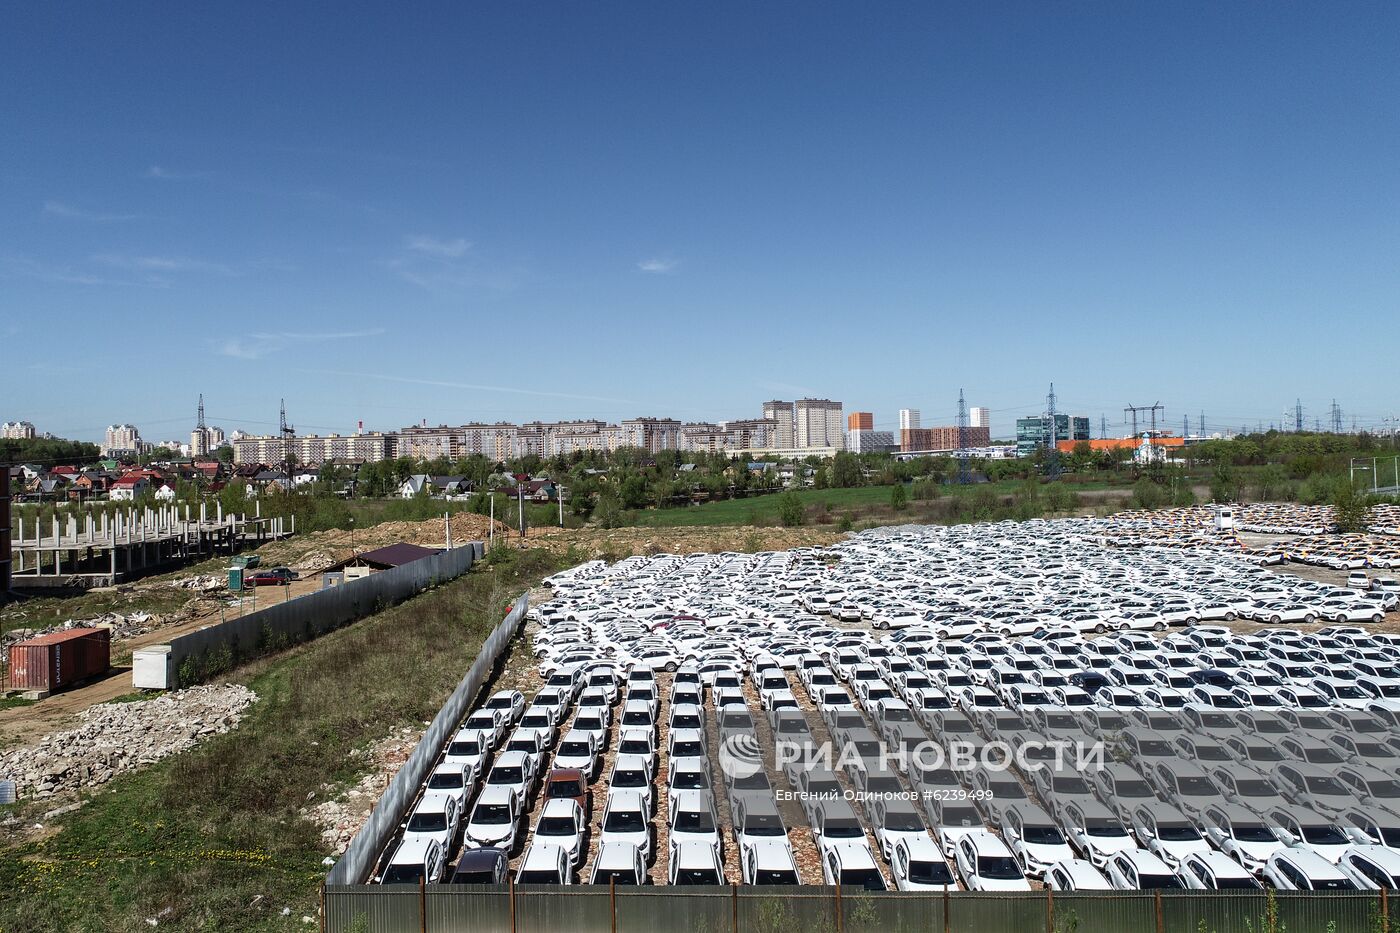 Стоянка автомобилей сервиса каршеринга "Яндекс.Драйв"